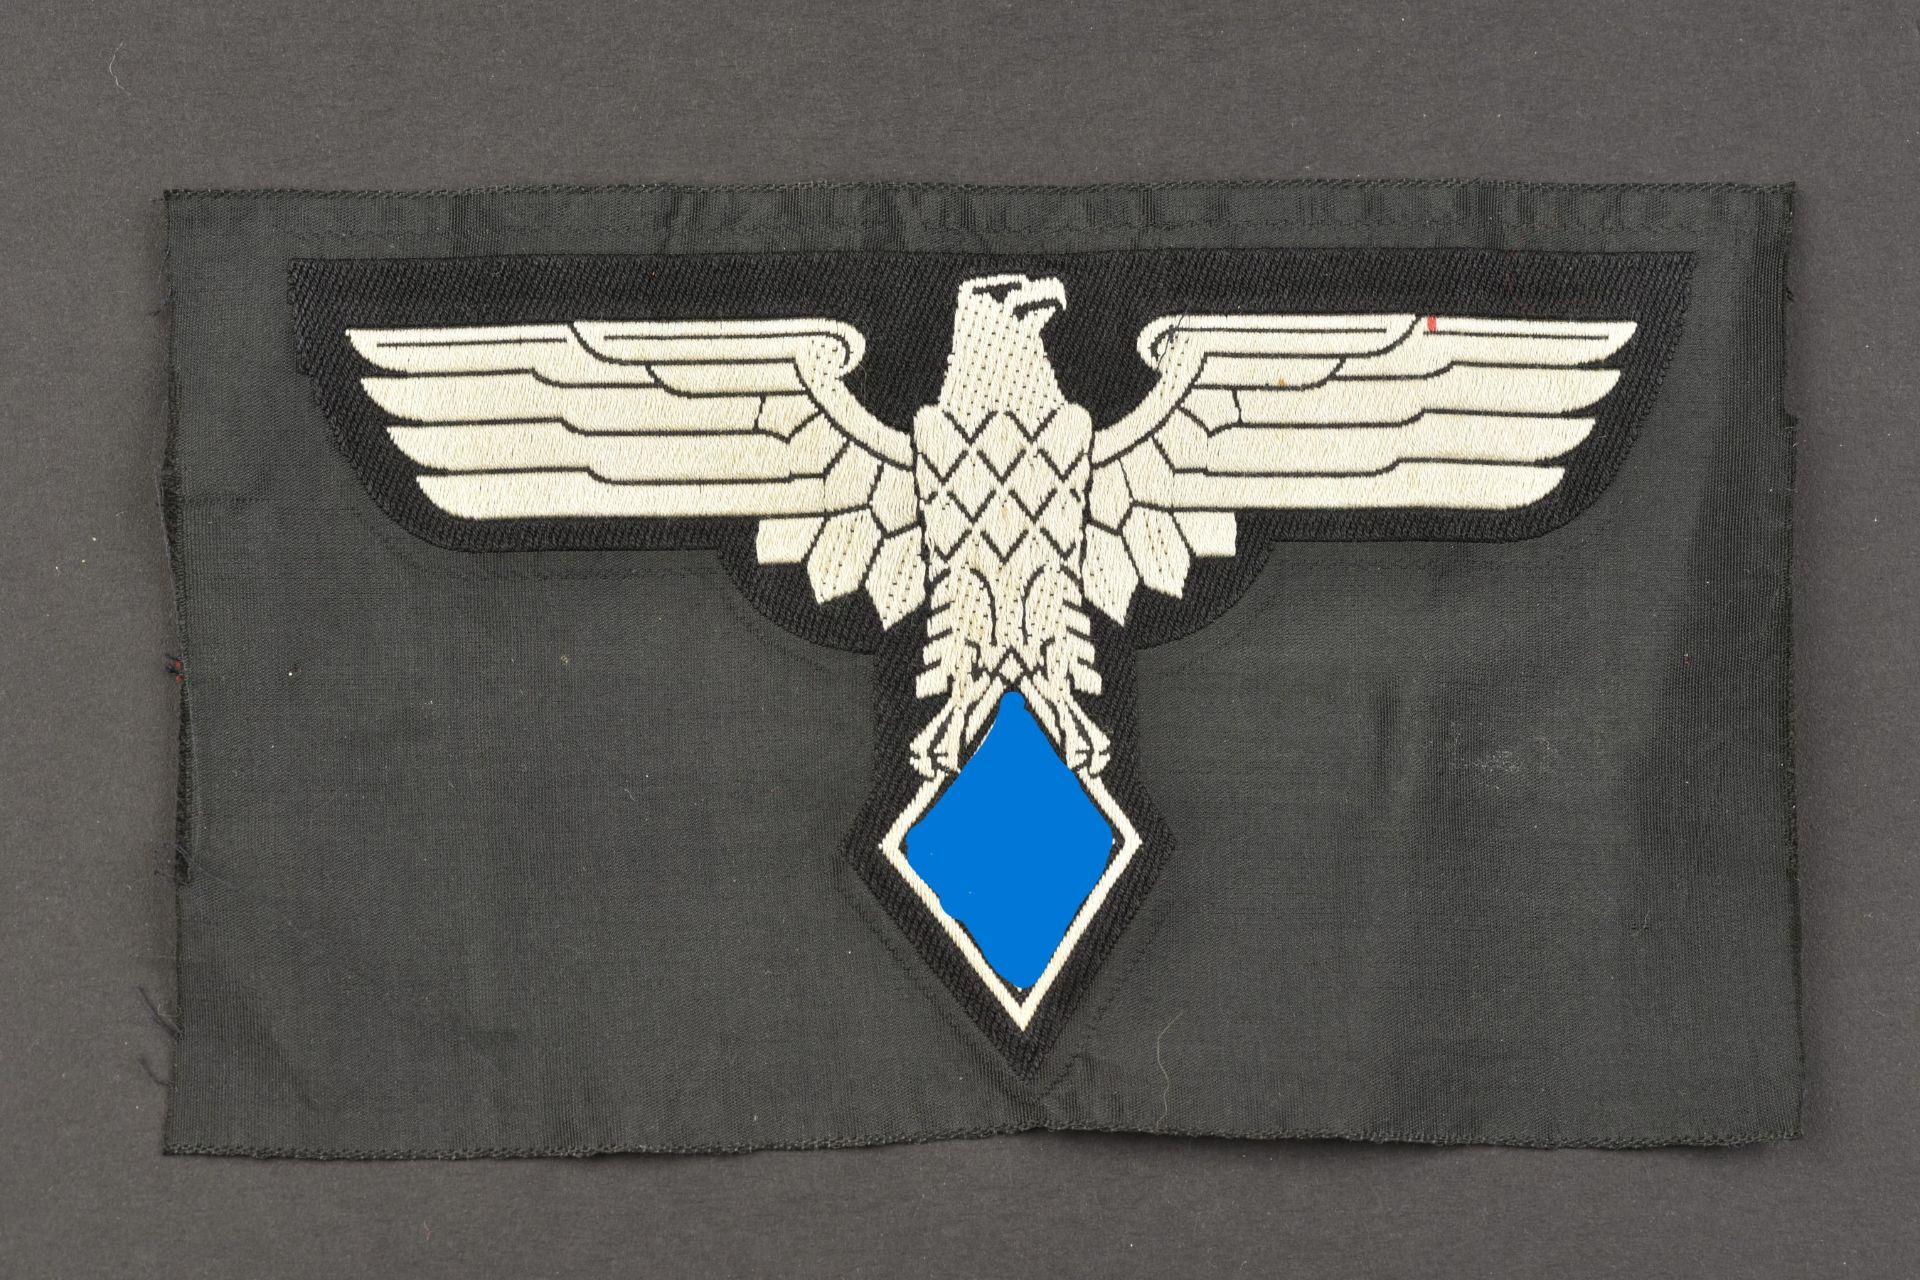 Insigne de maillot de sport Žtudiants du Reich. Reich student sports jersey badge.